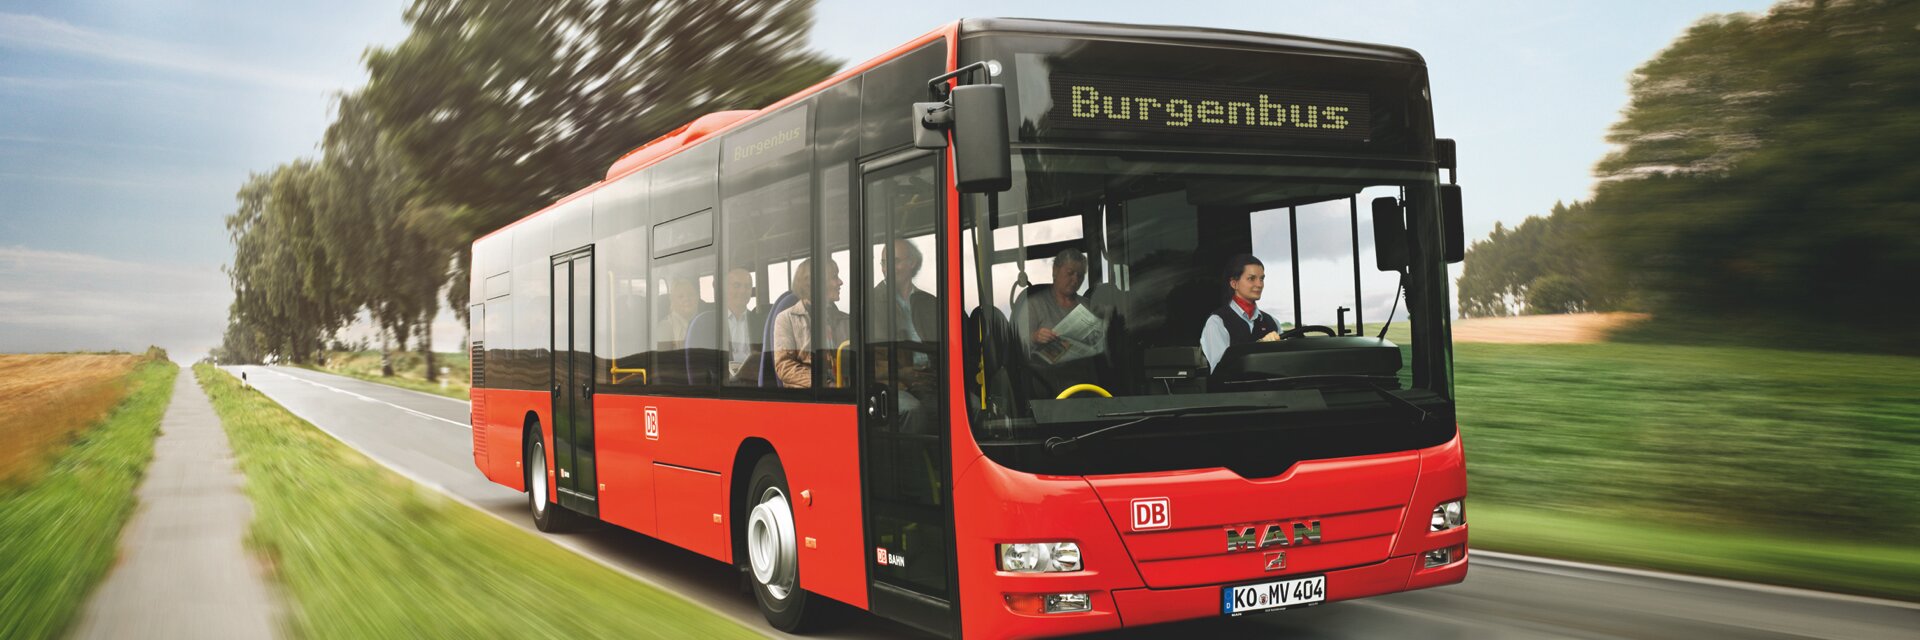 Case Study: DB Regio AG, Sparte Bus - Impression #1